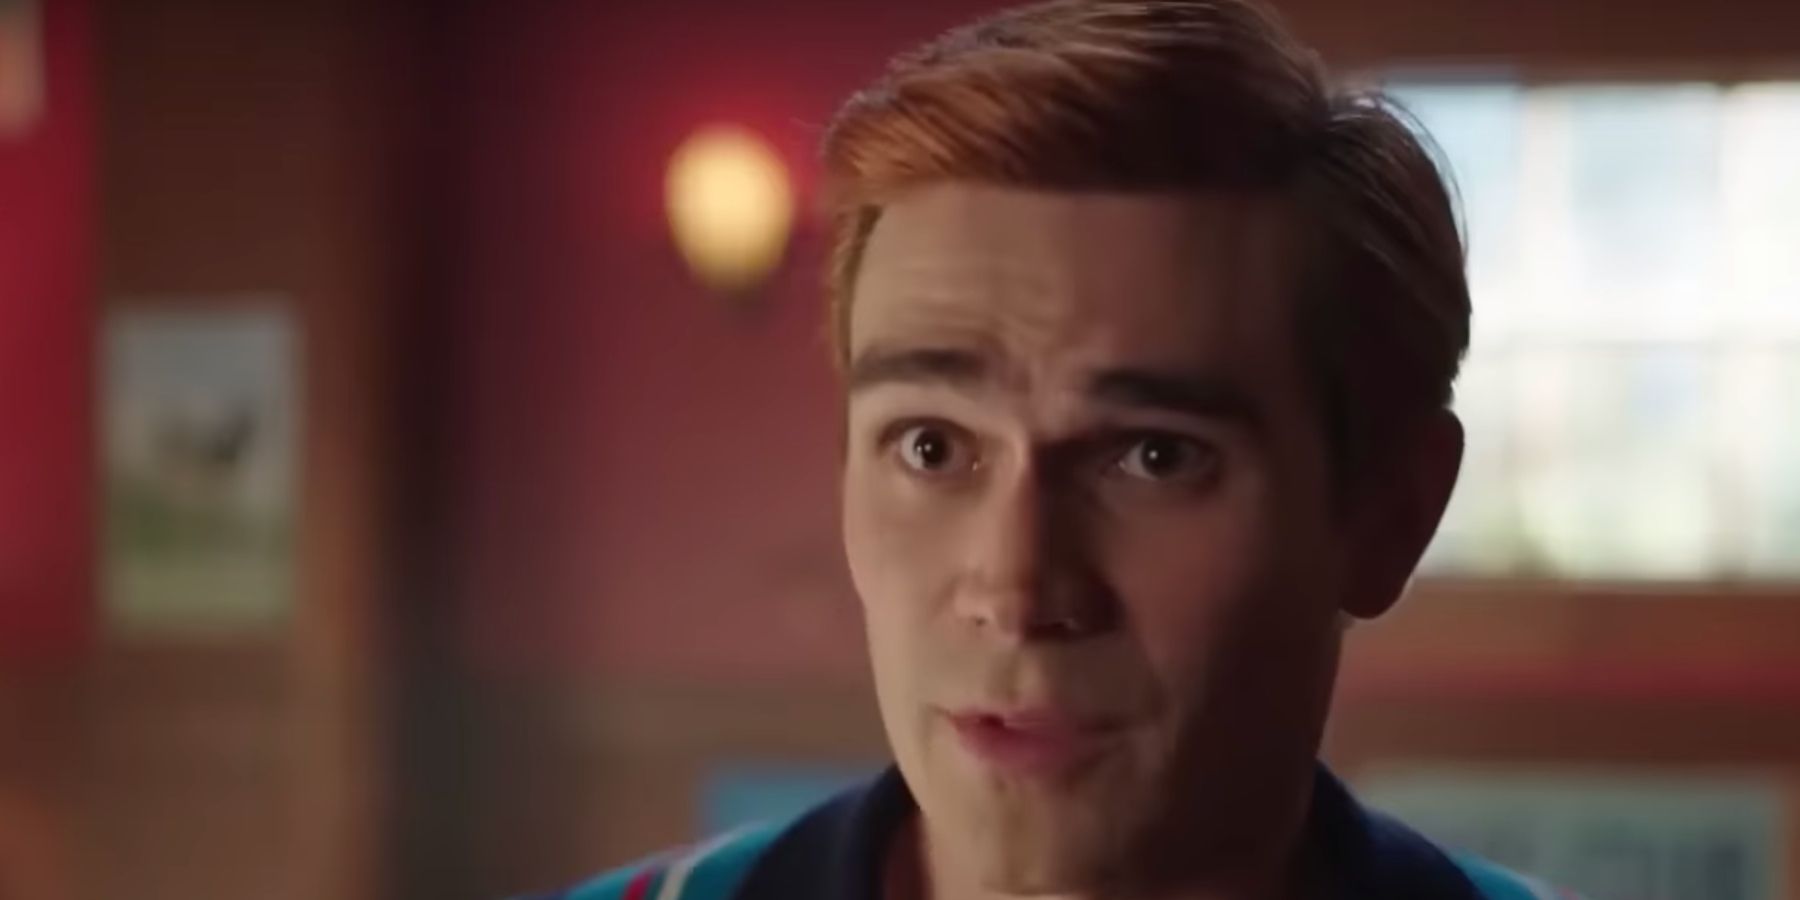 Tráiler de la temporada 7 de Riverdale: Archie toma su decisión final en los últimos episodios de CW Show